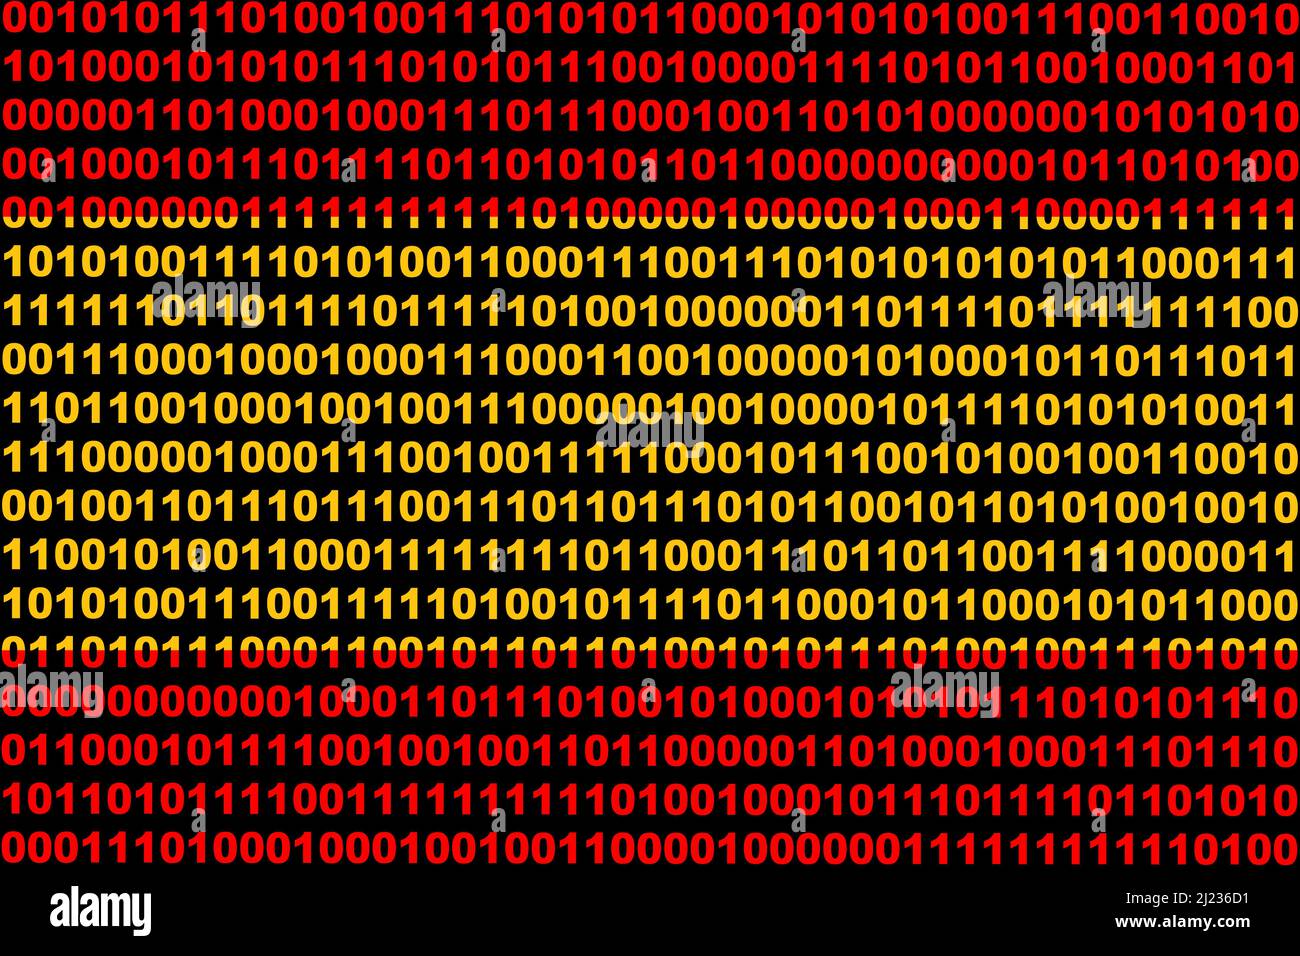 Hacker Spanien. Digitale Flagge Spaniens und ein binäres Cybersicherheitskonzept mit 0 und 1. Computerhacker Spanien. Computerangriff. Dreifarbig. Stockfoto